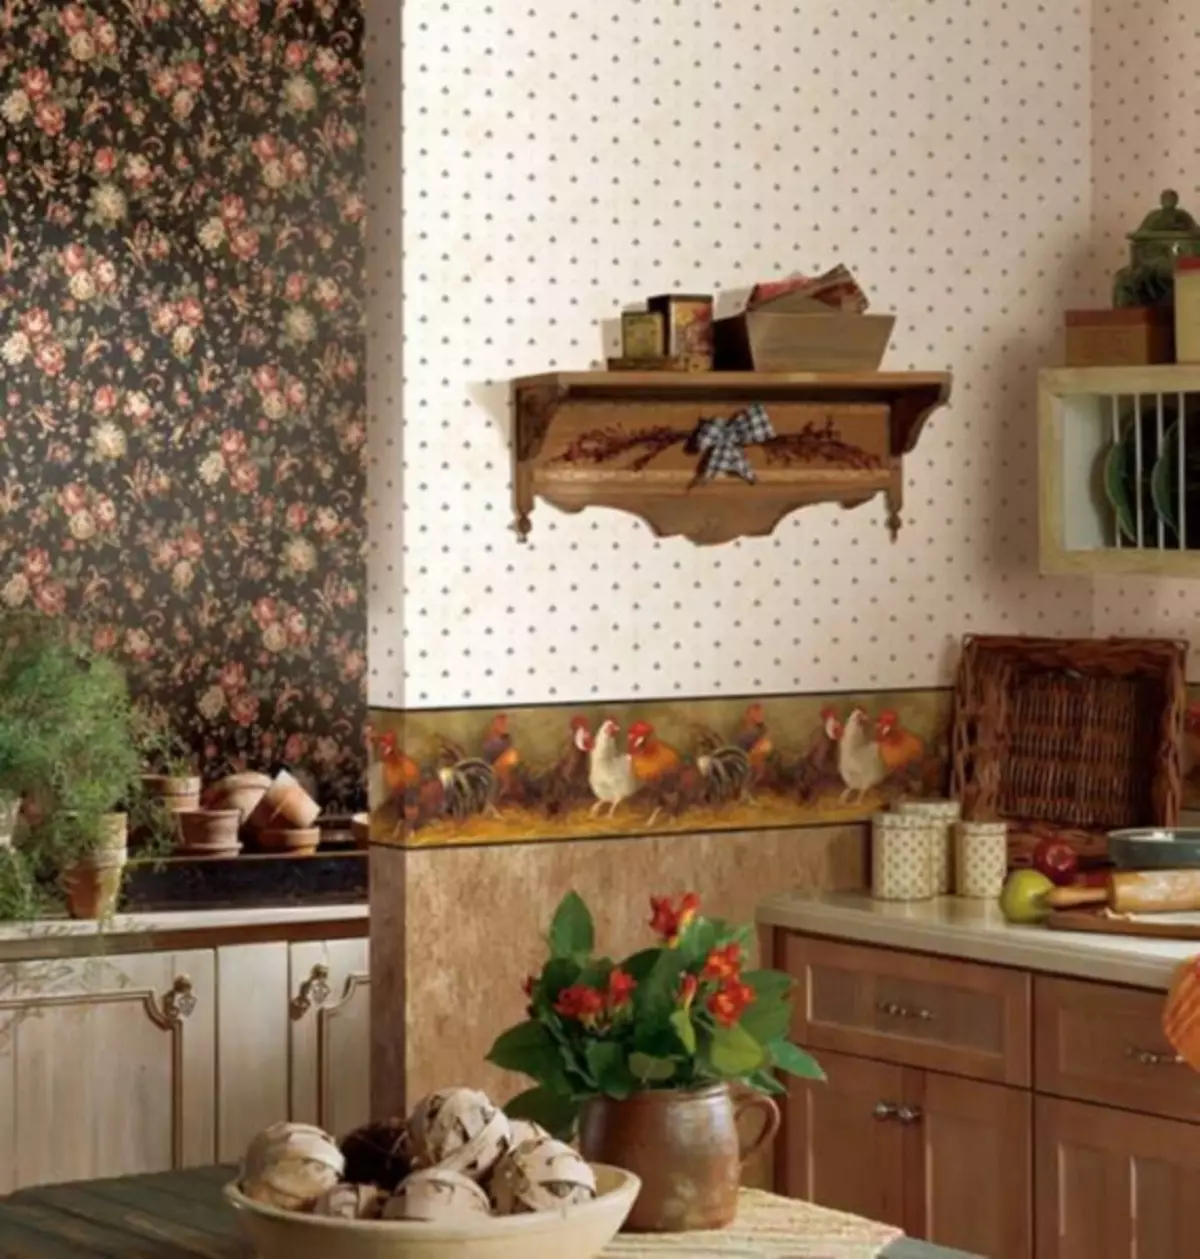 स्वयंपाकघरसाठी वॉलपेपर: लहान स्वयंपाकघर, इंटीरियर कल्पना, धुण्यायोग्य आणि फ्लिसलीन, व्हिडिओ निर्देशांसाठी फोटो